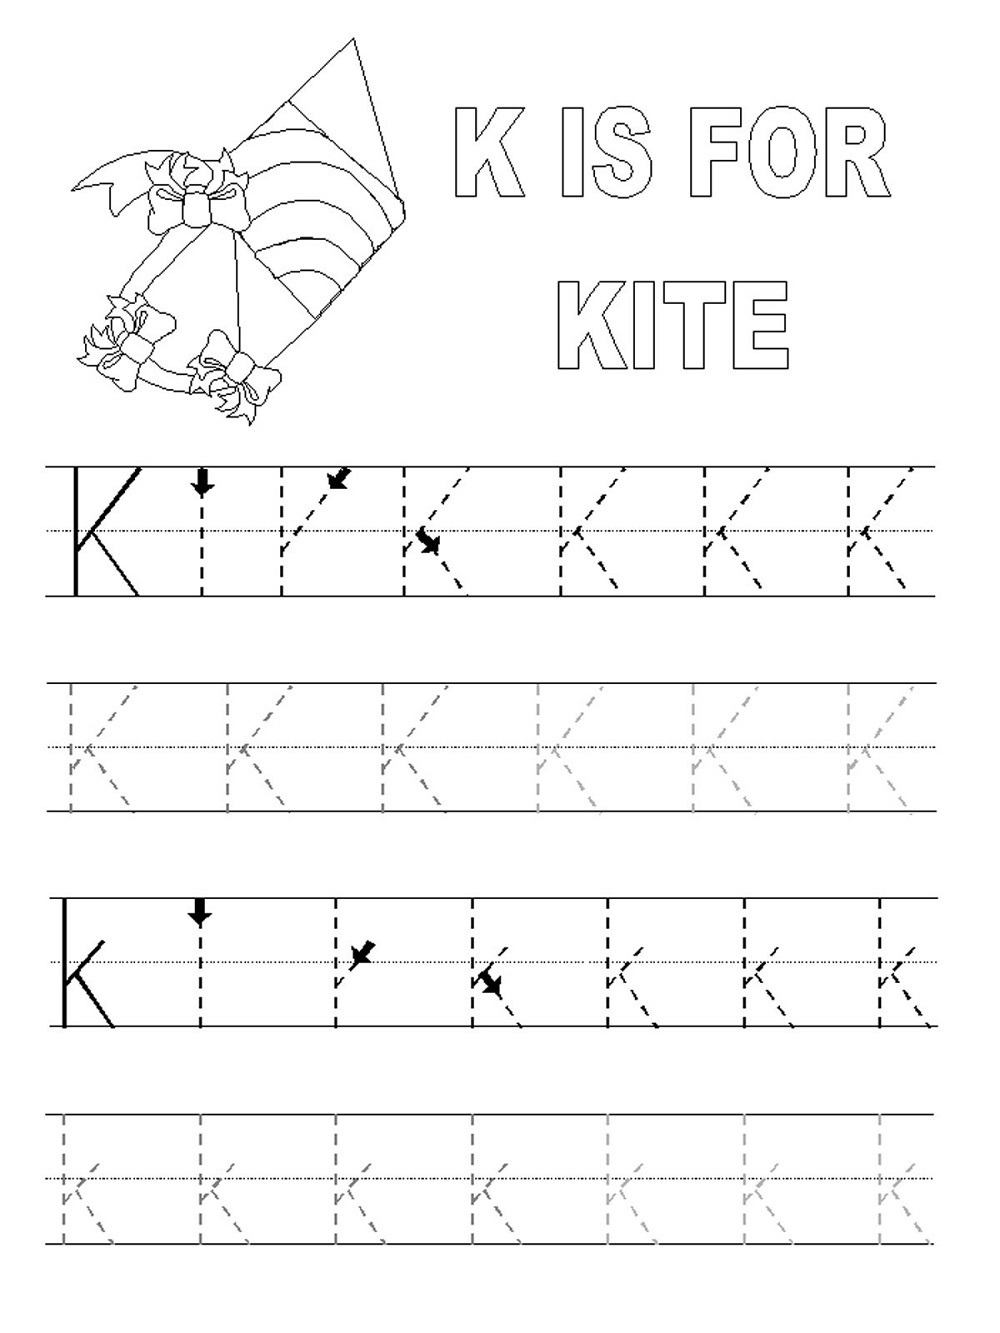 preschool-printables-june-2012-free-printable-abc-tracing-letters-micah-haas